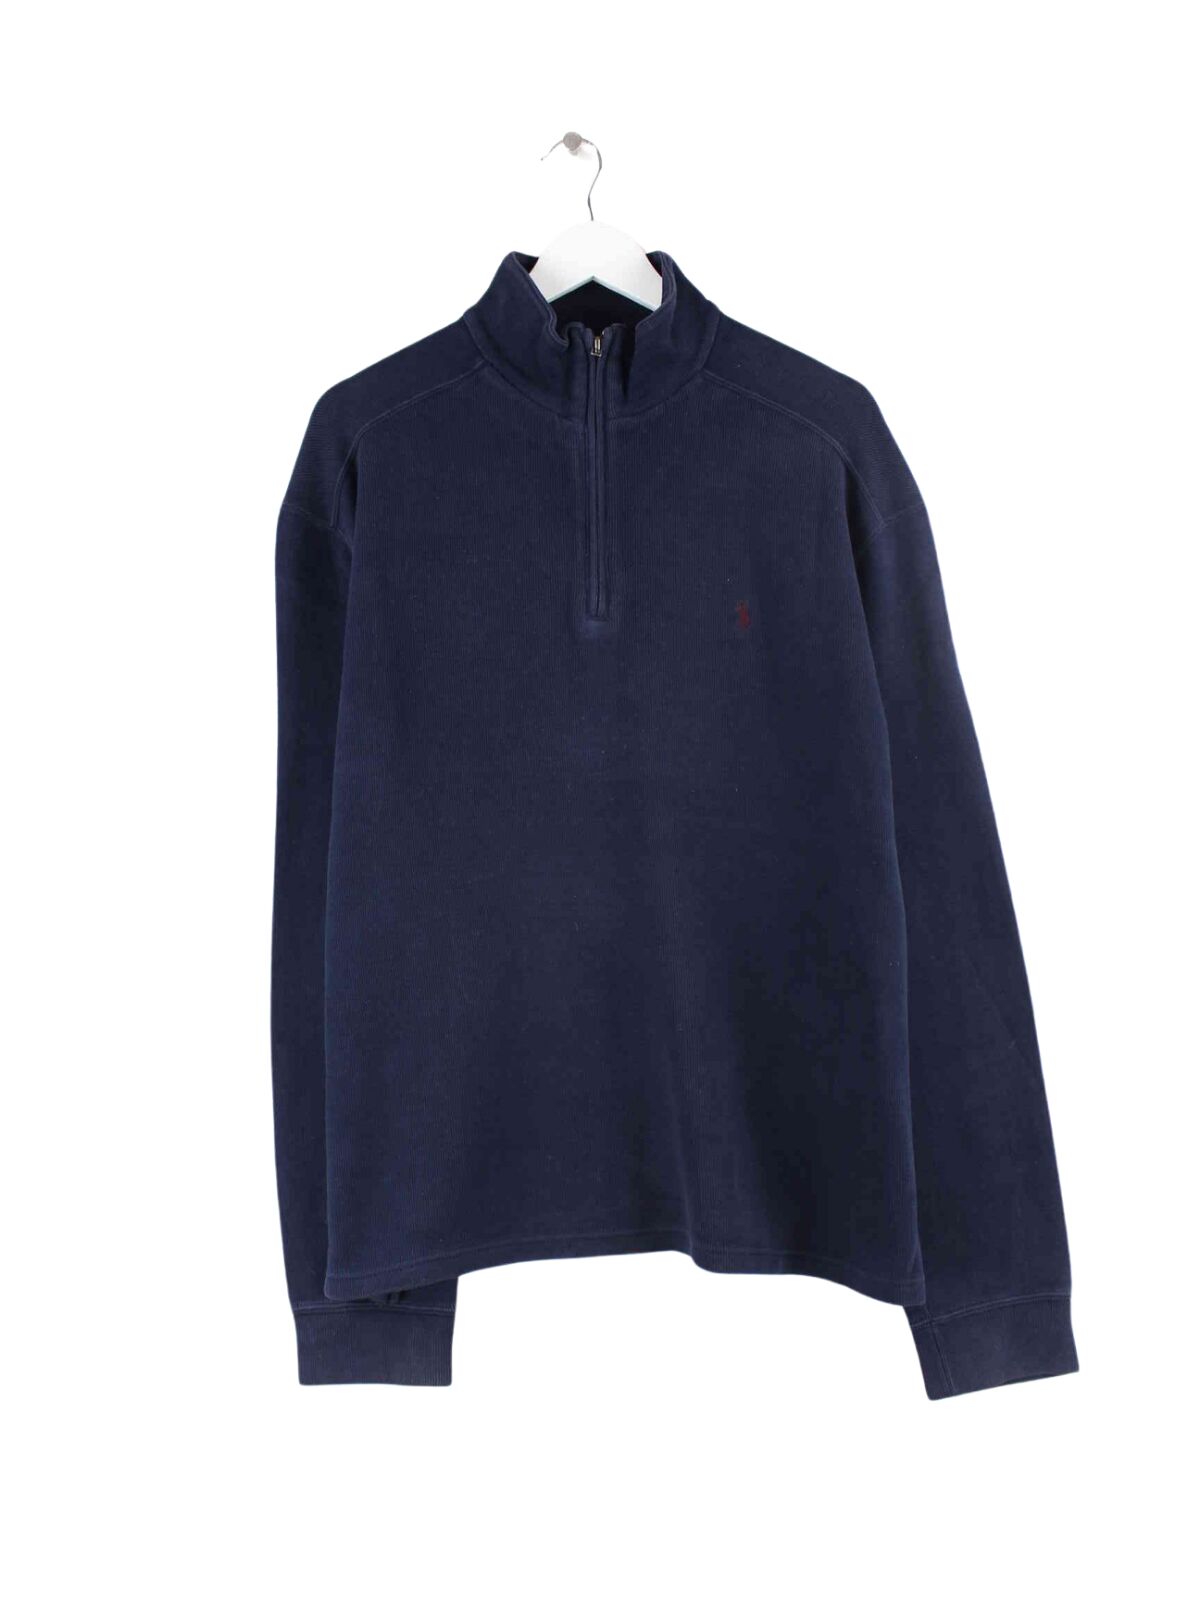 Ralph Lauren 90s Vintage Half Zip Sweater Blau L (front image)